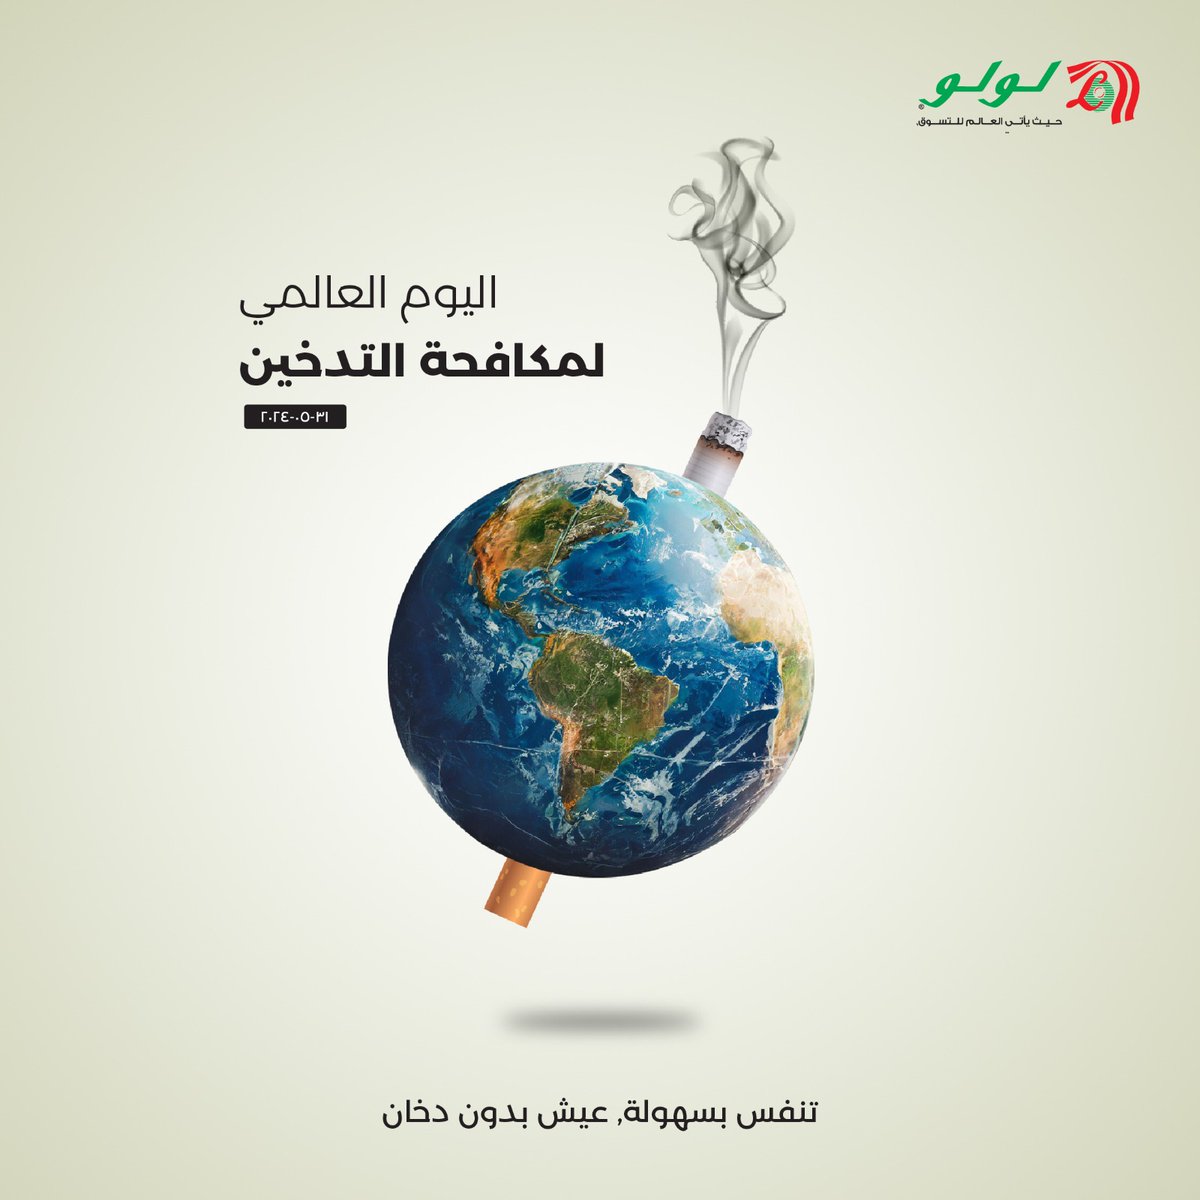 اليوم العالمي دون تدخين! معًا ننقي الهواء، وننير الطريق نحو مستقبل خالٍ من التدخين!